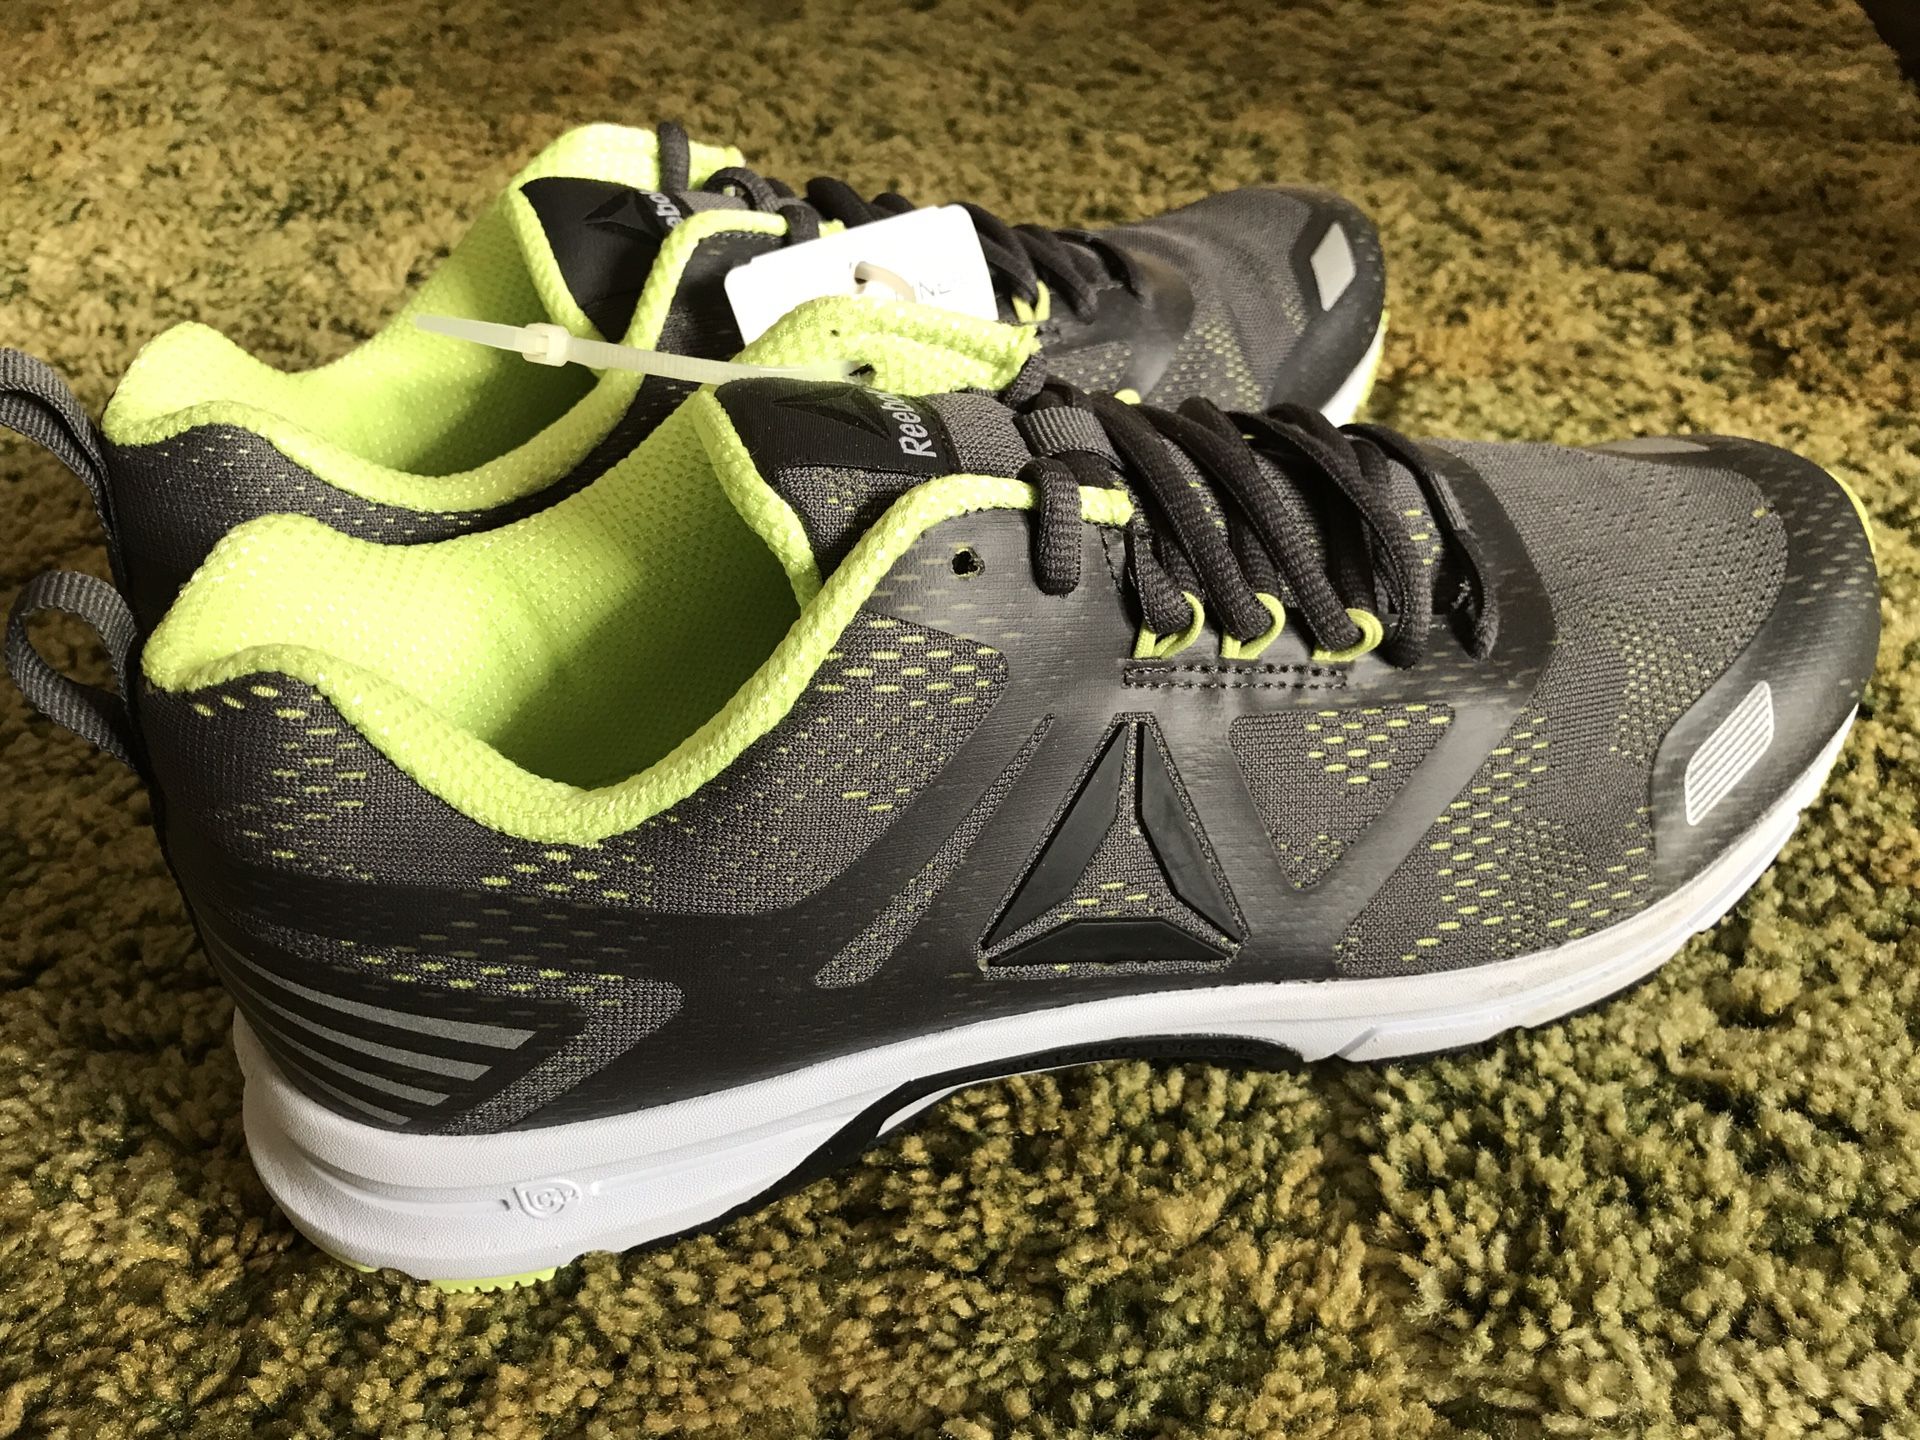 Reebok Ahary Runner Men’s Running Shoe, Size 11, Brand New